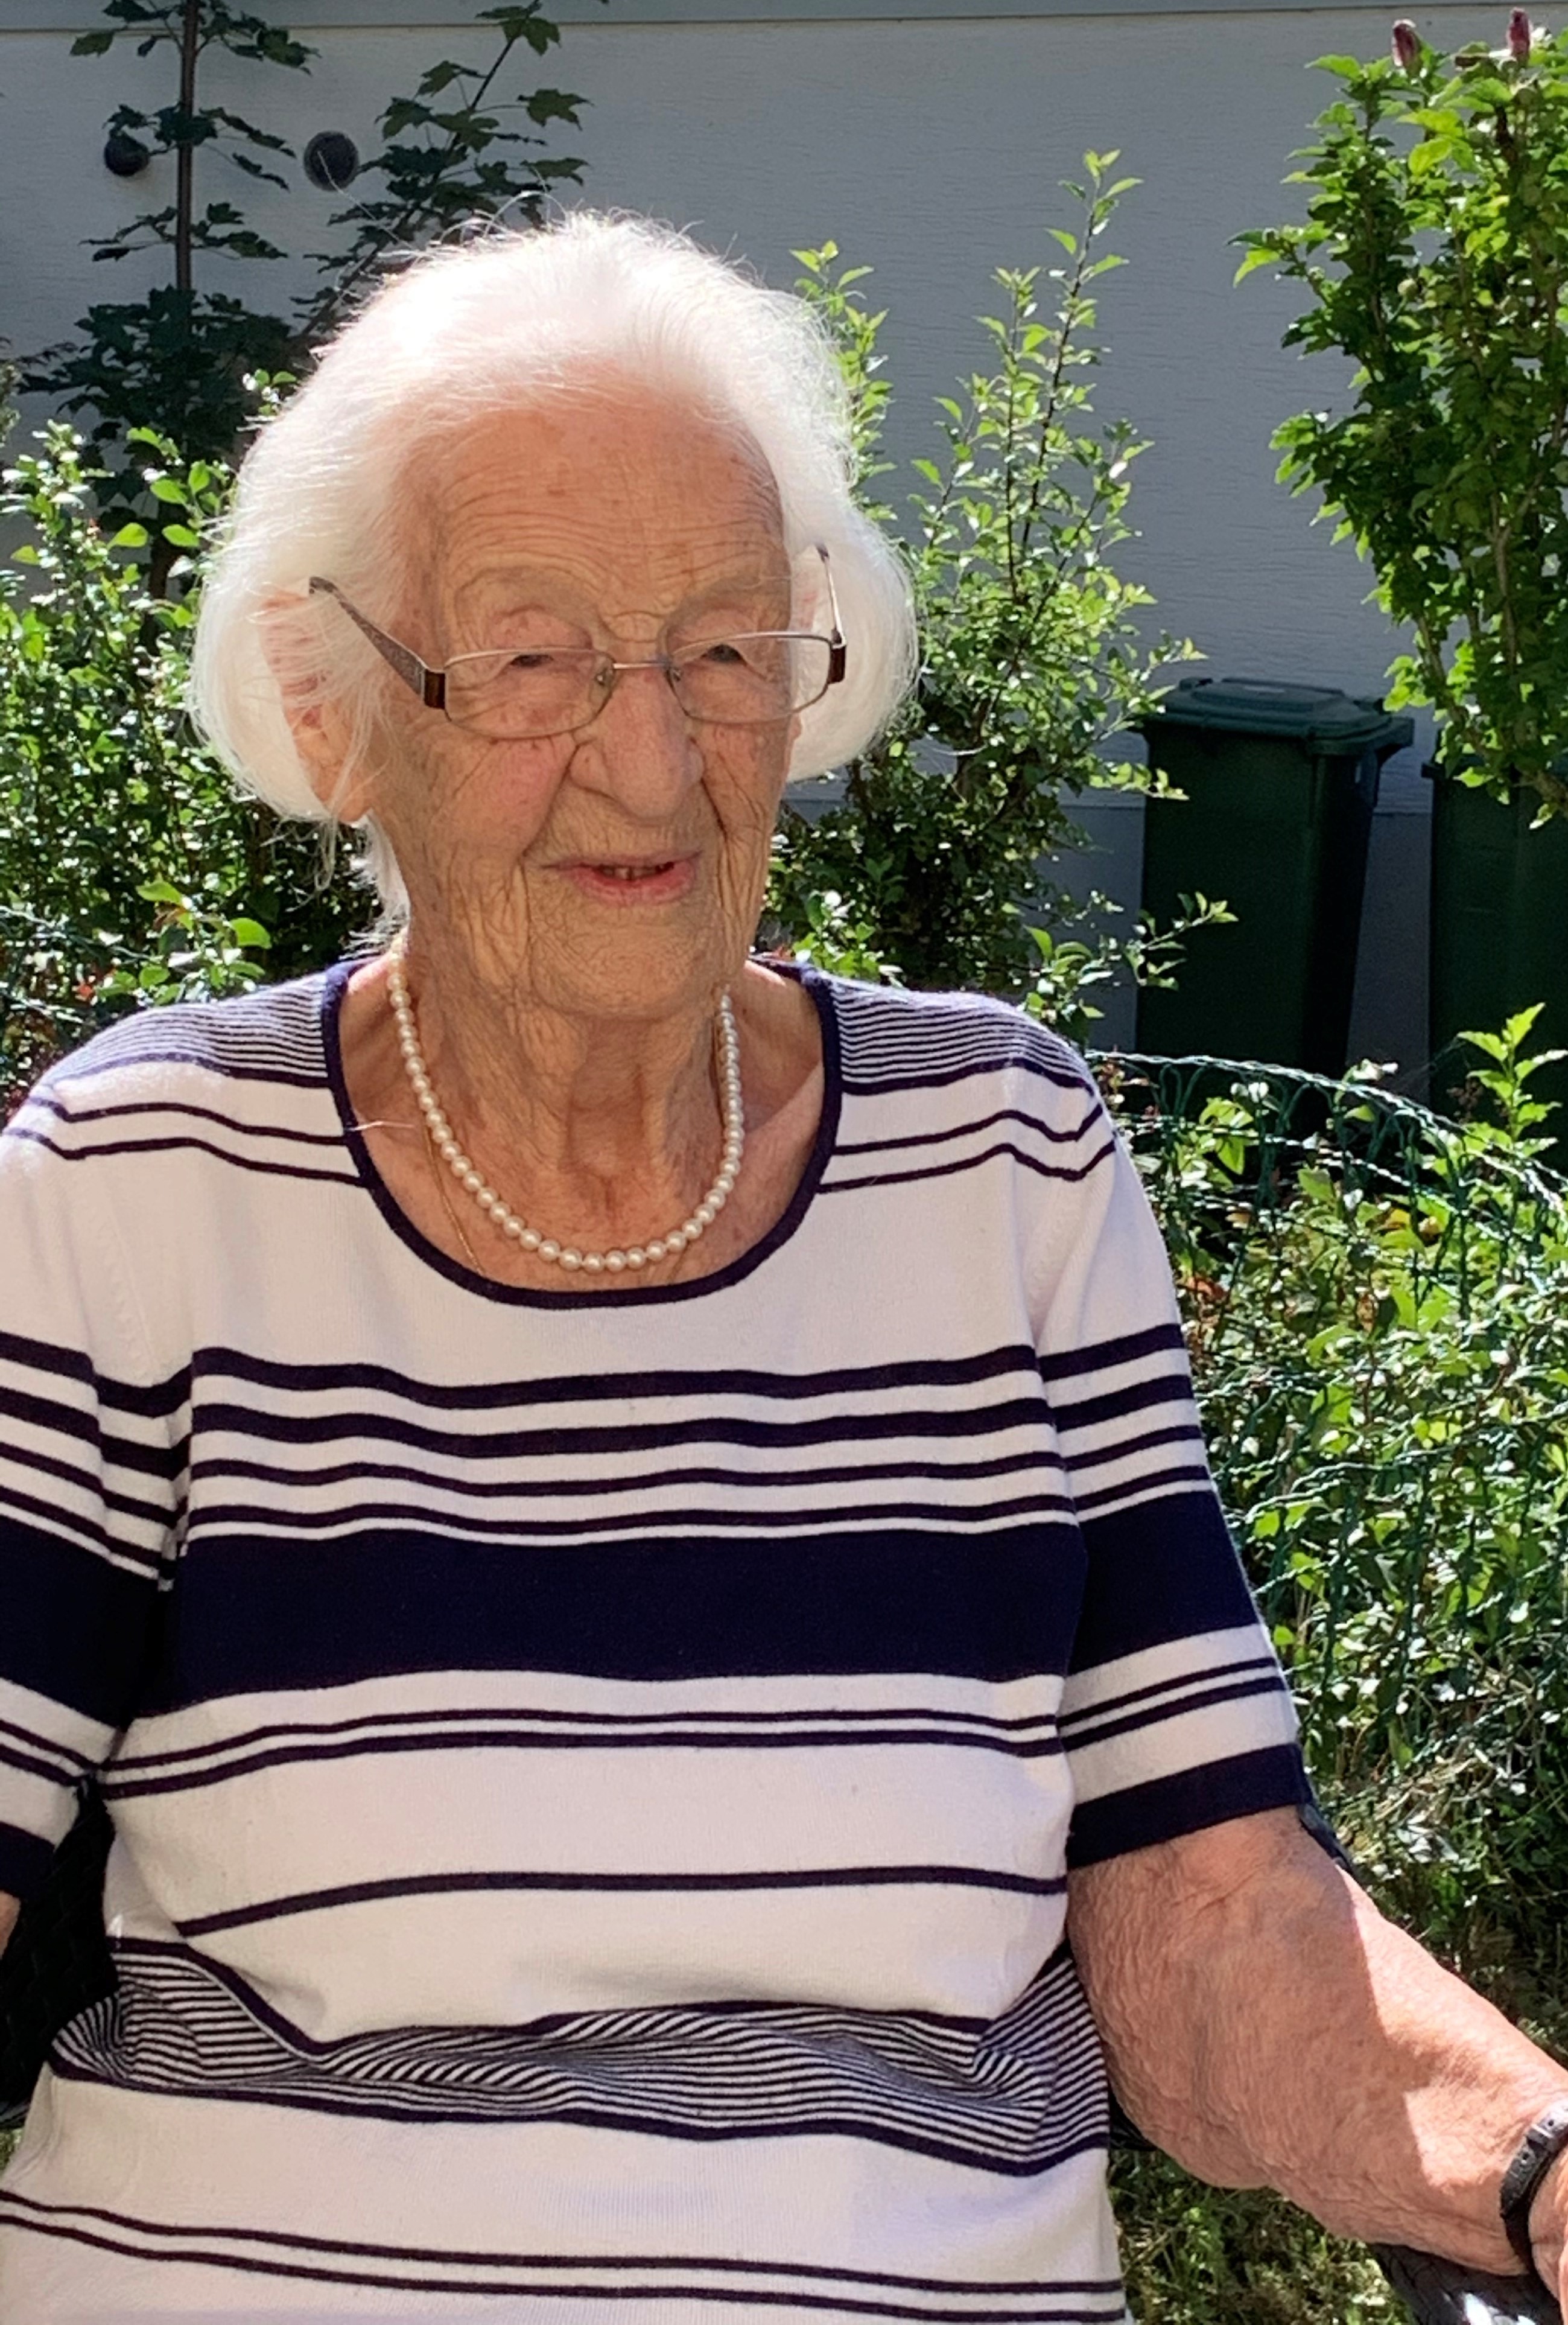 Am heutigen 4. September 2020, durfte Frau Klara Krebs ihren 100. Geburtstag feiern!
Die Gemeindebehörden gratulieren herzlich dazu: